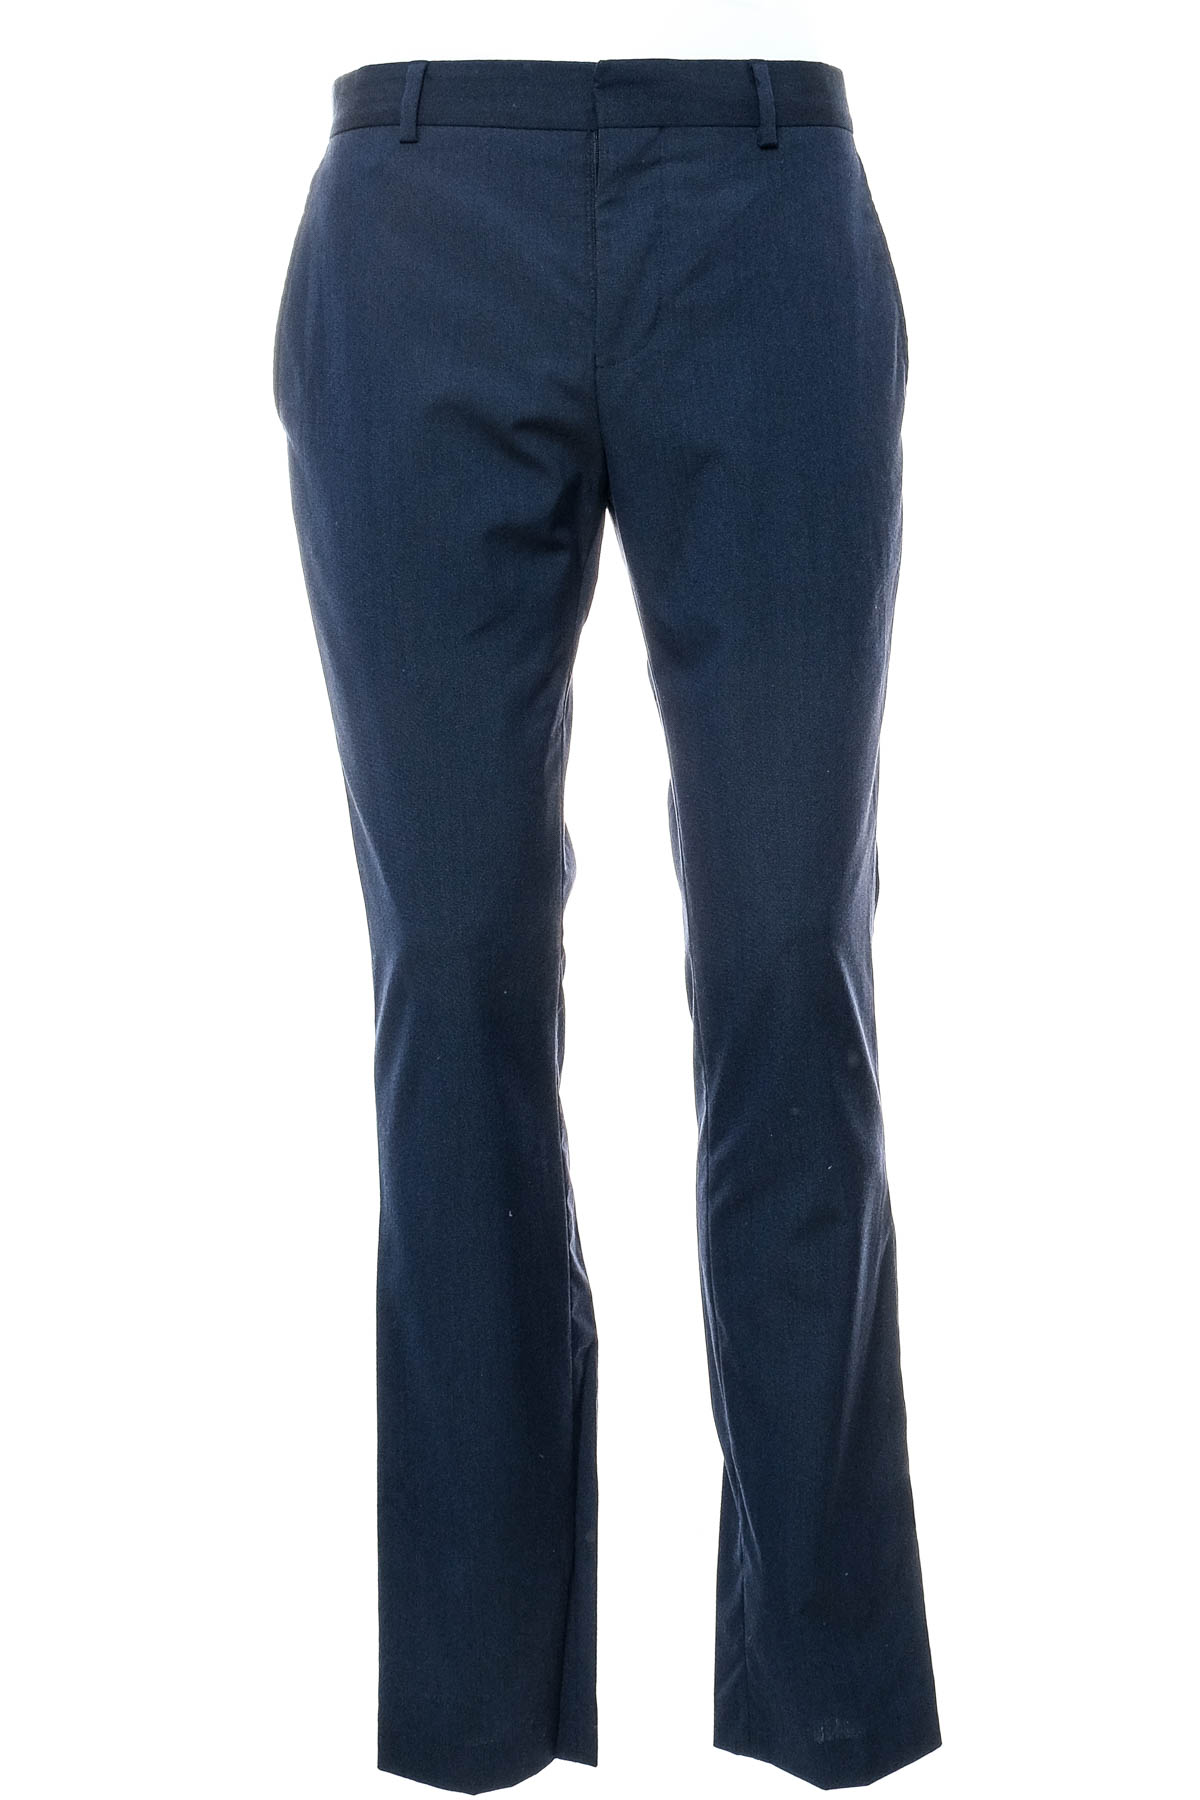 Pantalon pentru bărbați - RIVER ISLAND - 0